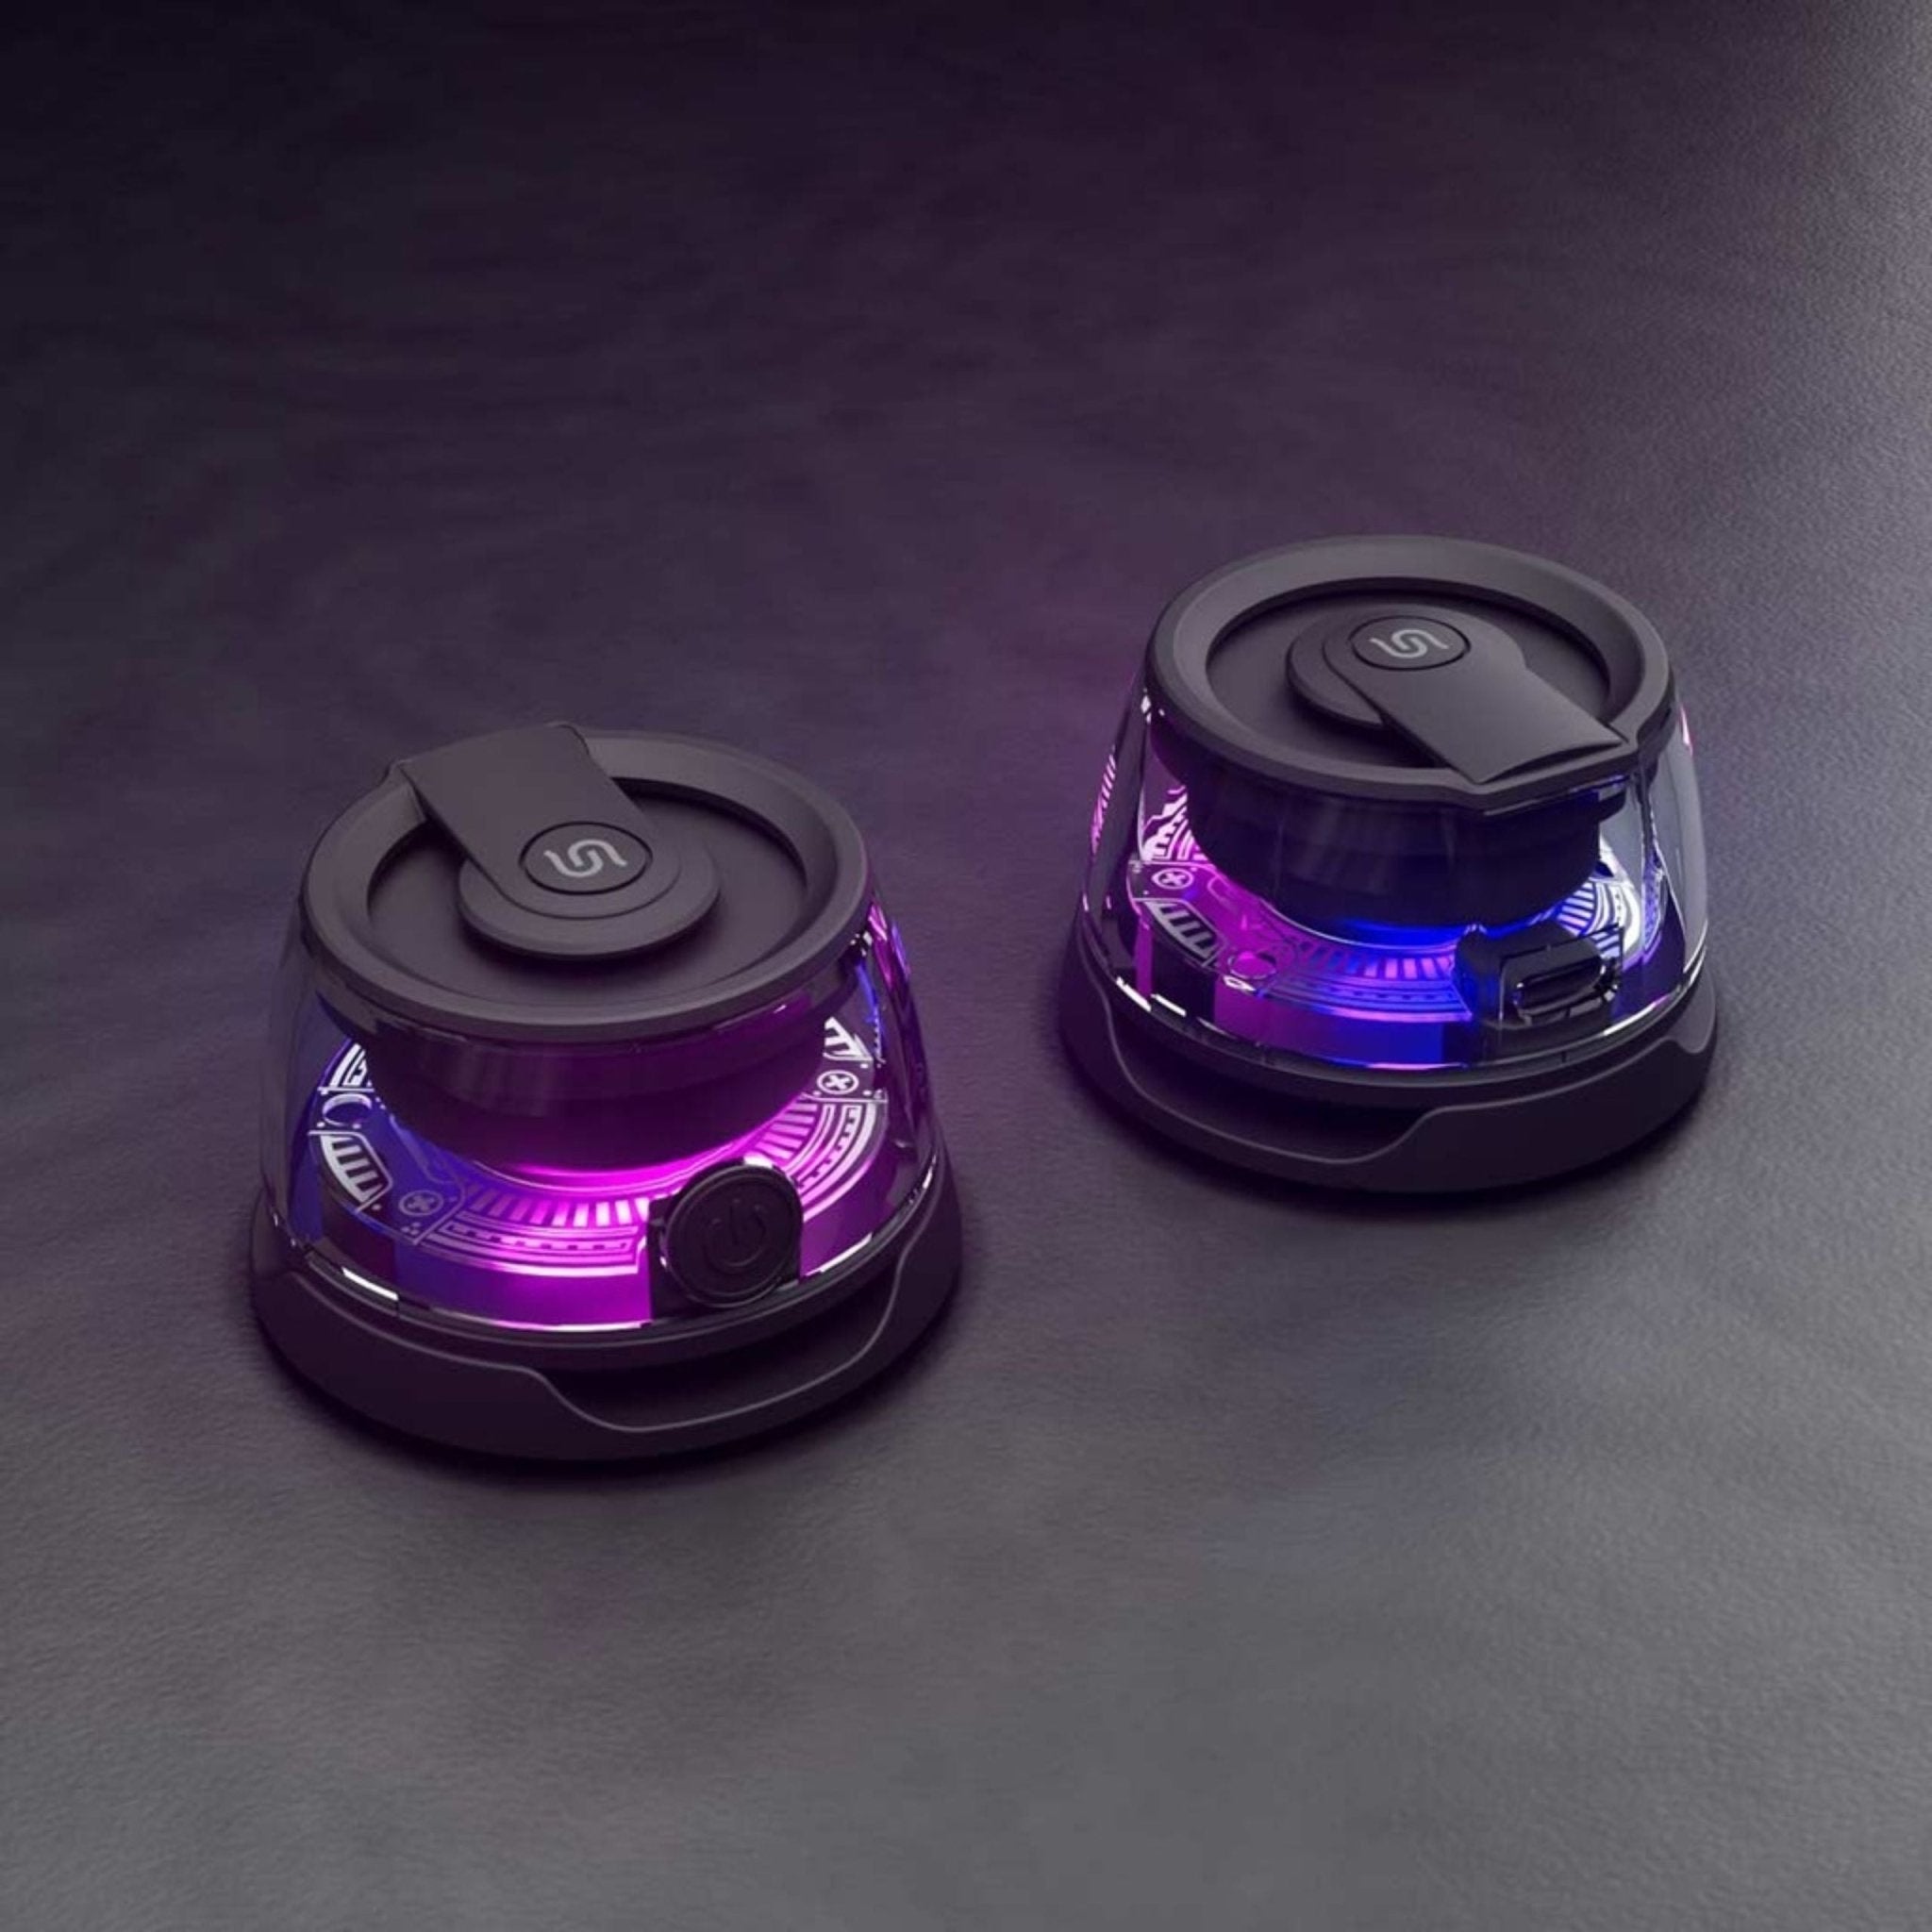 Porodo Soundtec Charme Magnetic Speaker - Black